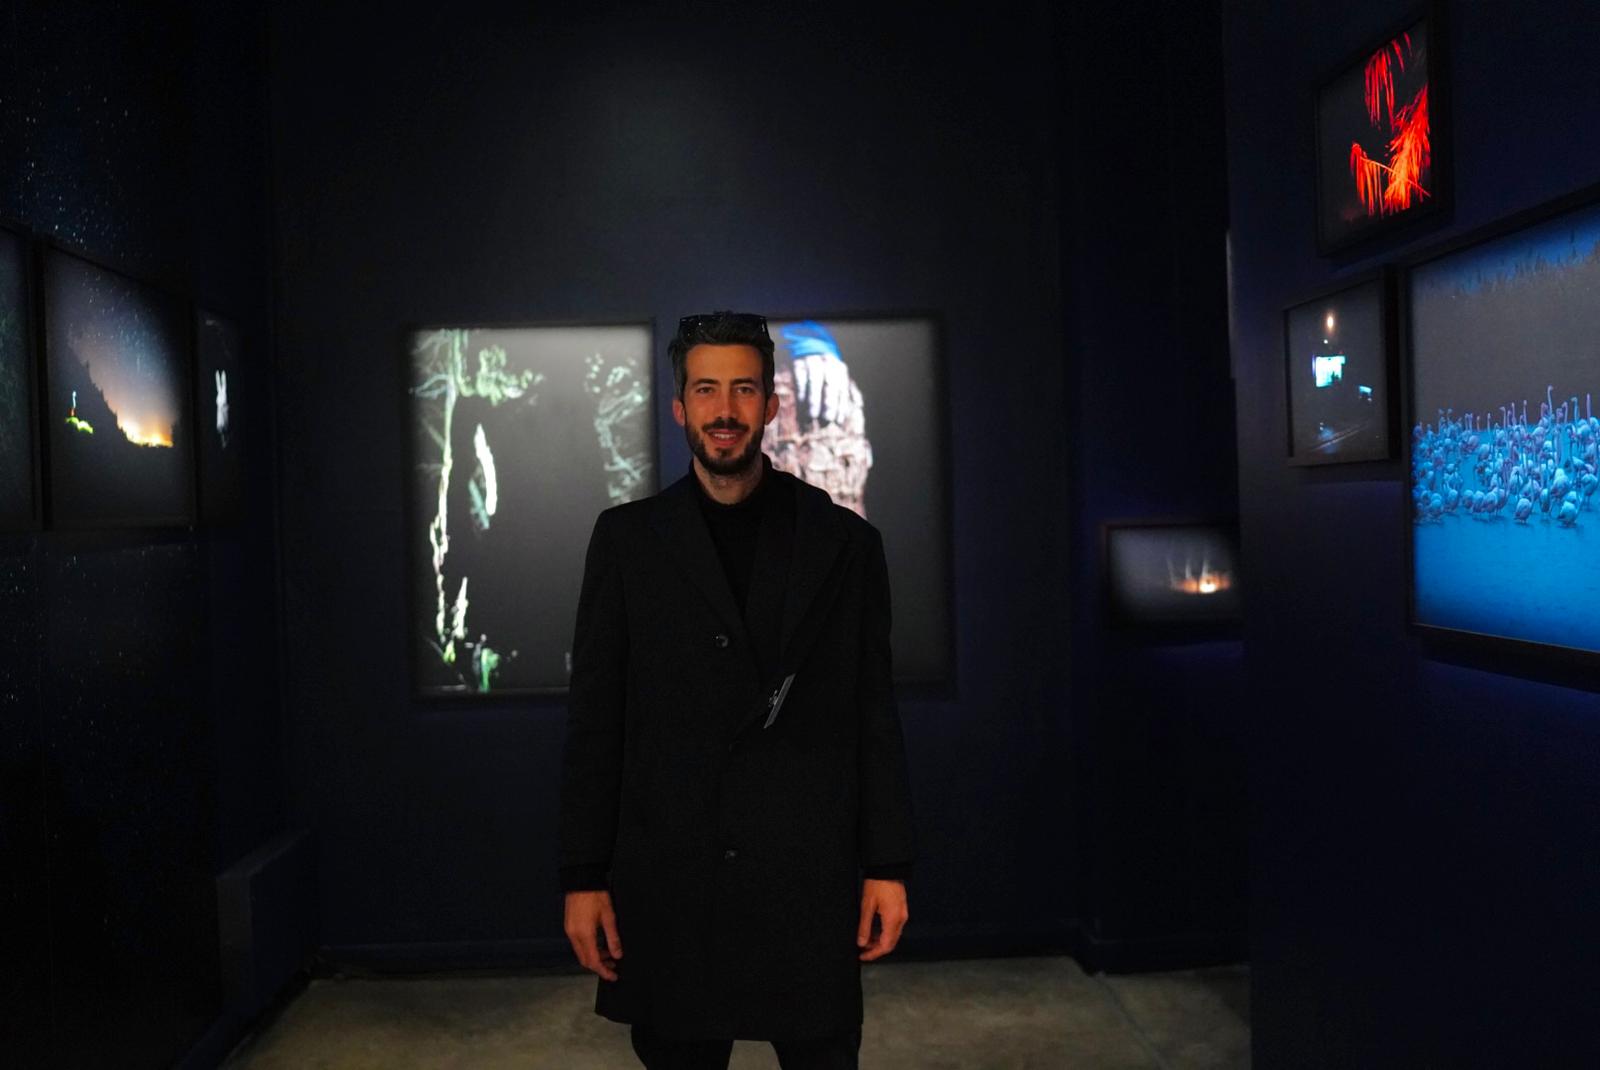 Gli scatti di Isacco Emiliani e Antonio Panzavolta protagonisti al festival parigino “Circulation(s)”